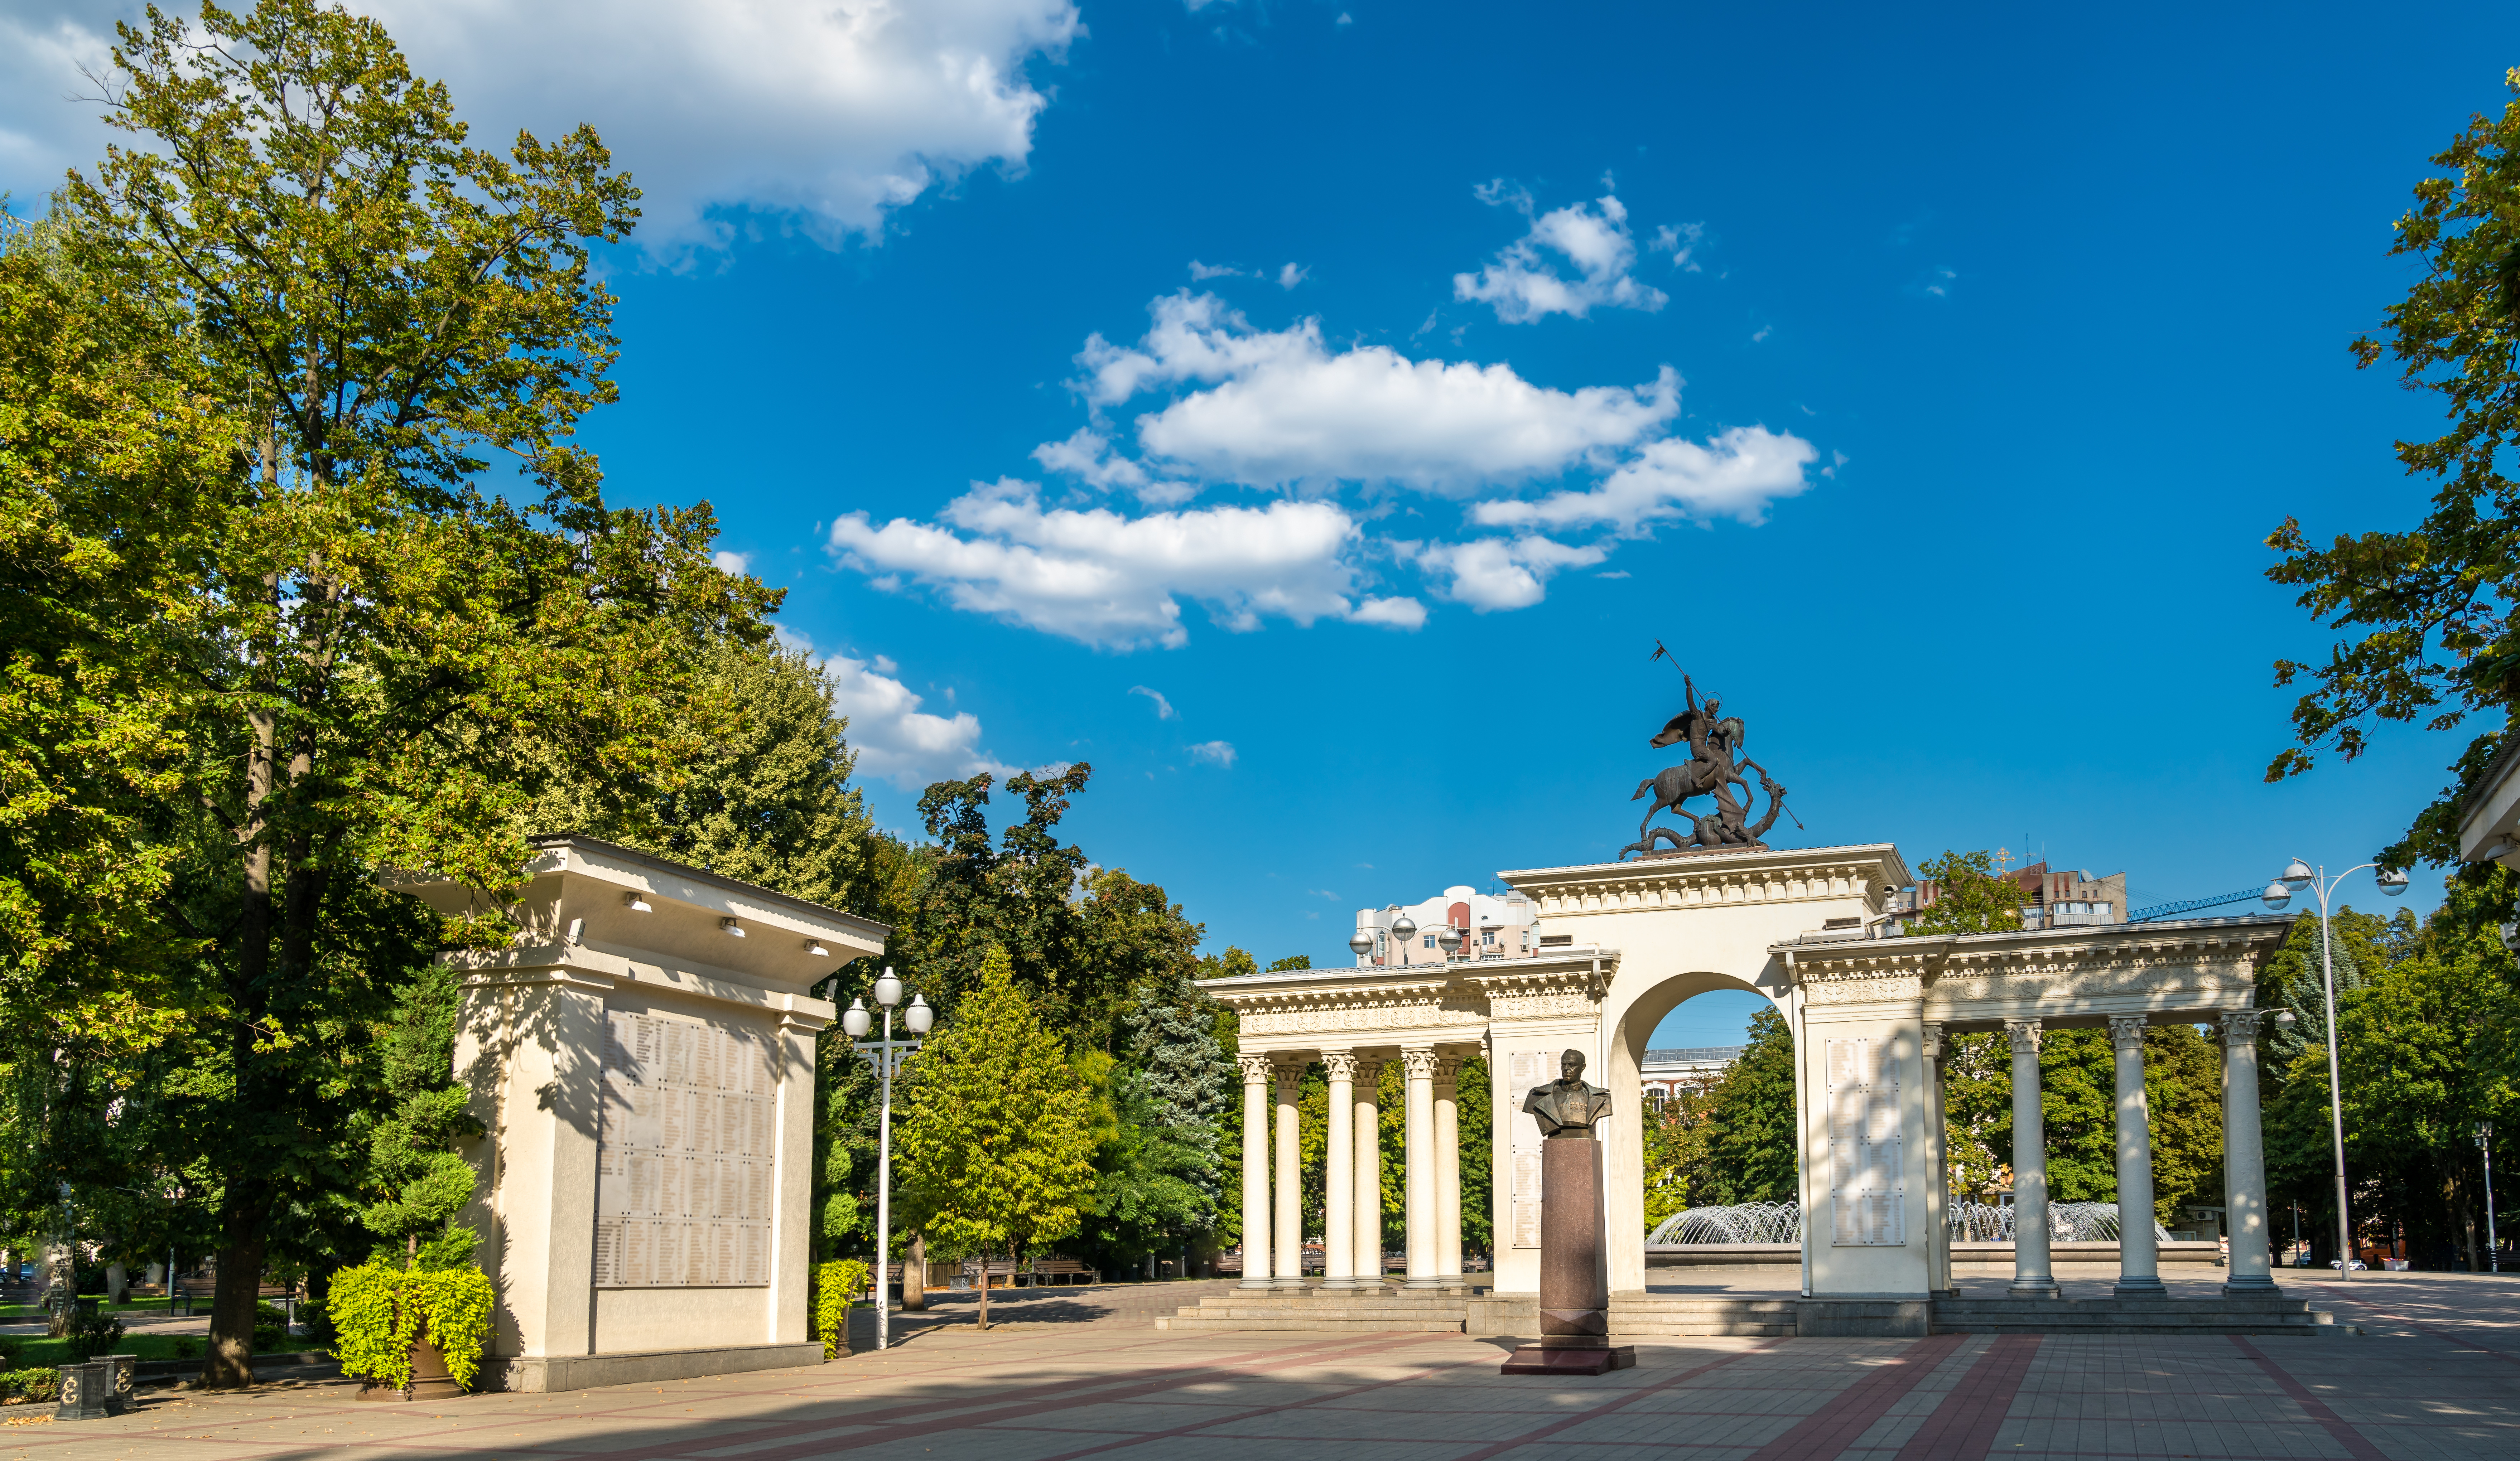 Экскурсия по Краснодару и парк Галицкого на транспорте туристов